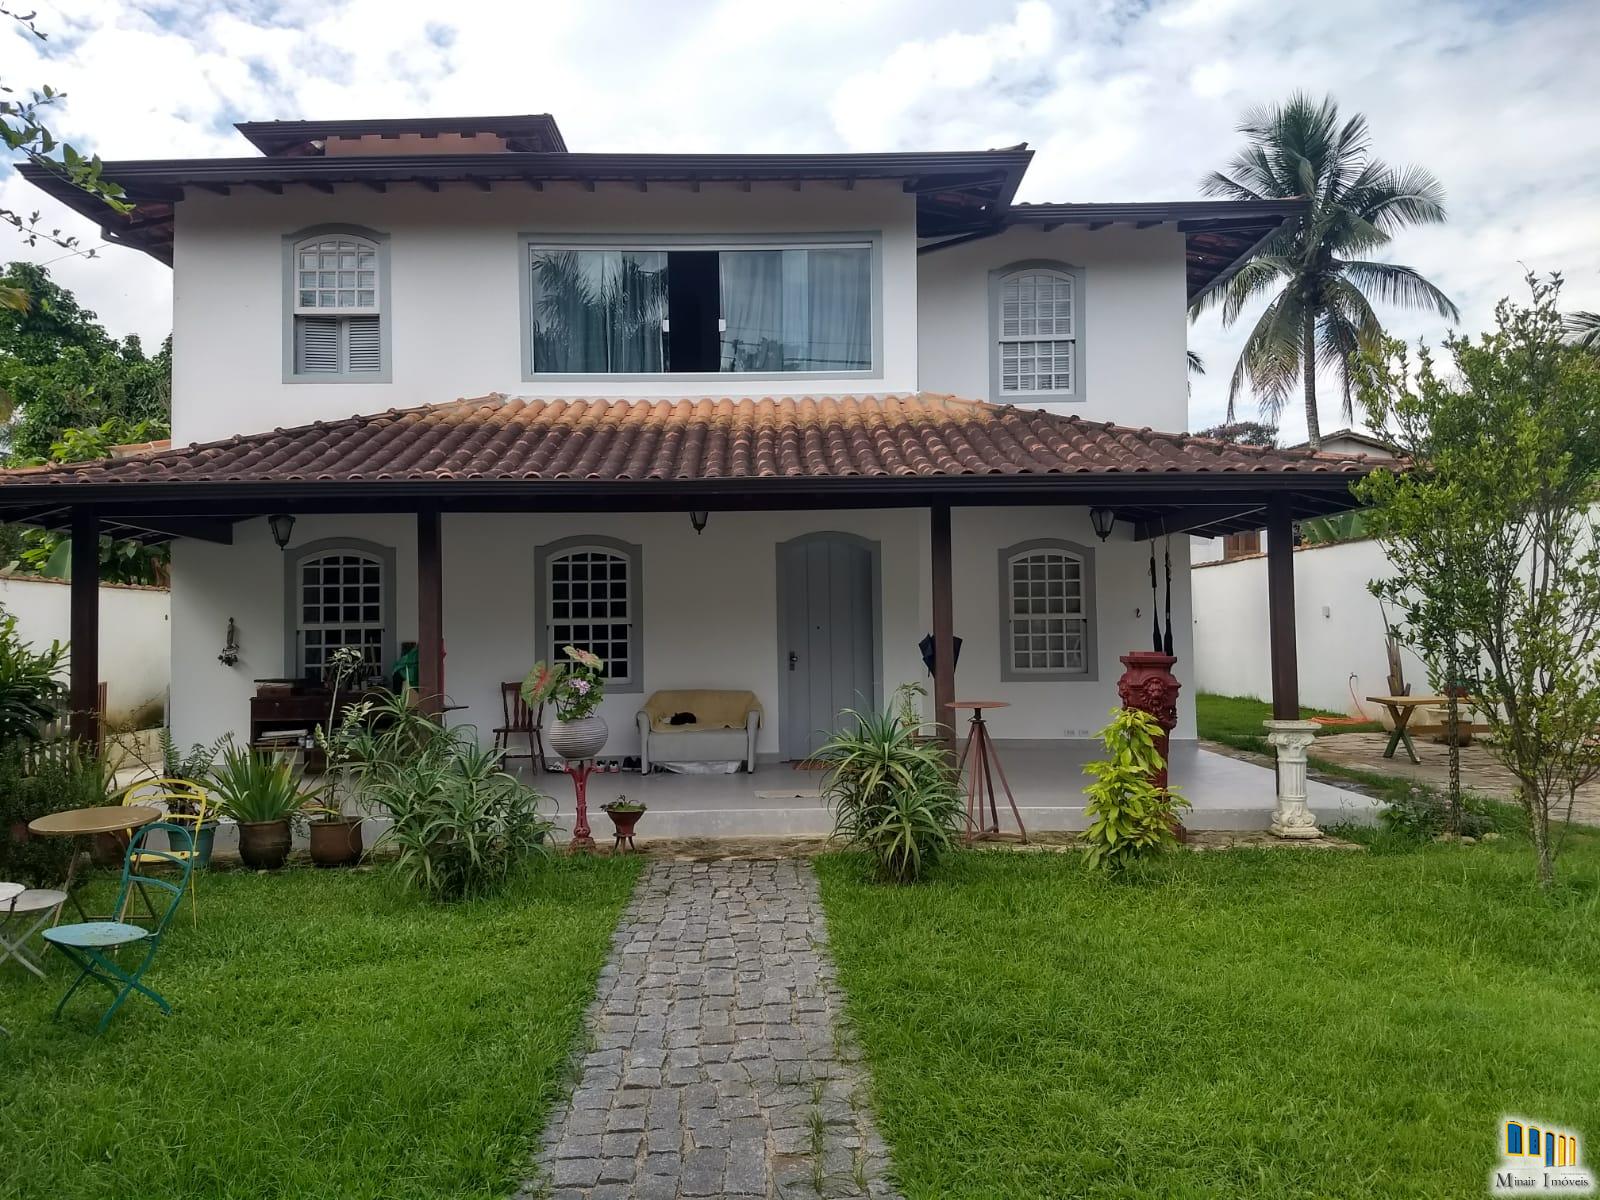 PCH 178 – Ótima casa com amplo espaço no bairro Caborê em Paraty-RJ